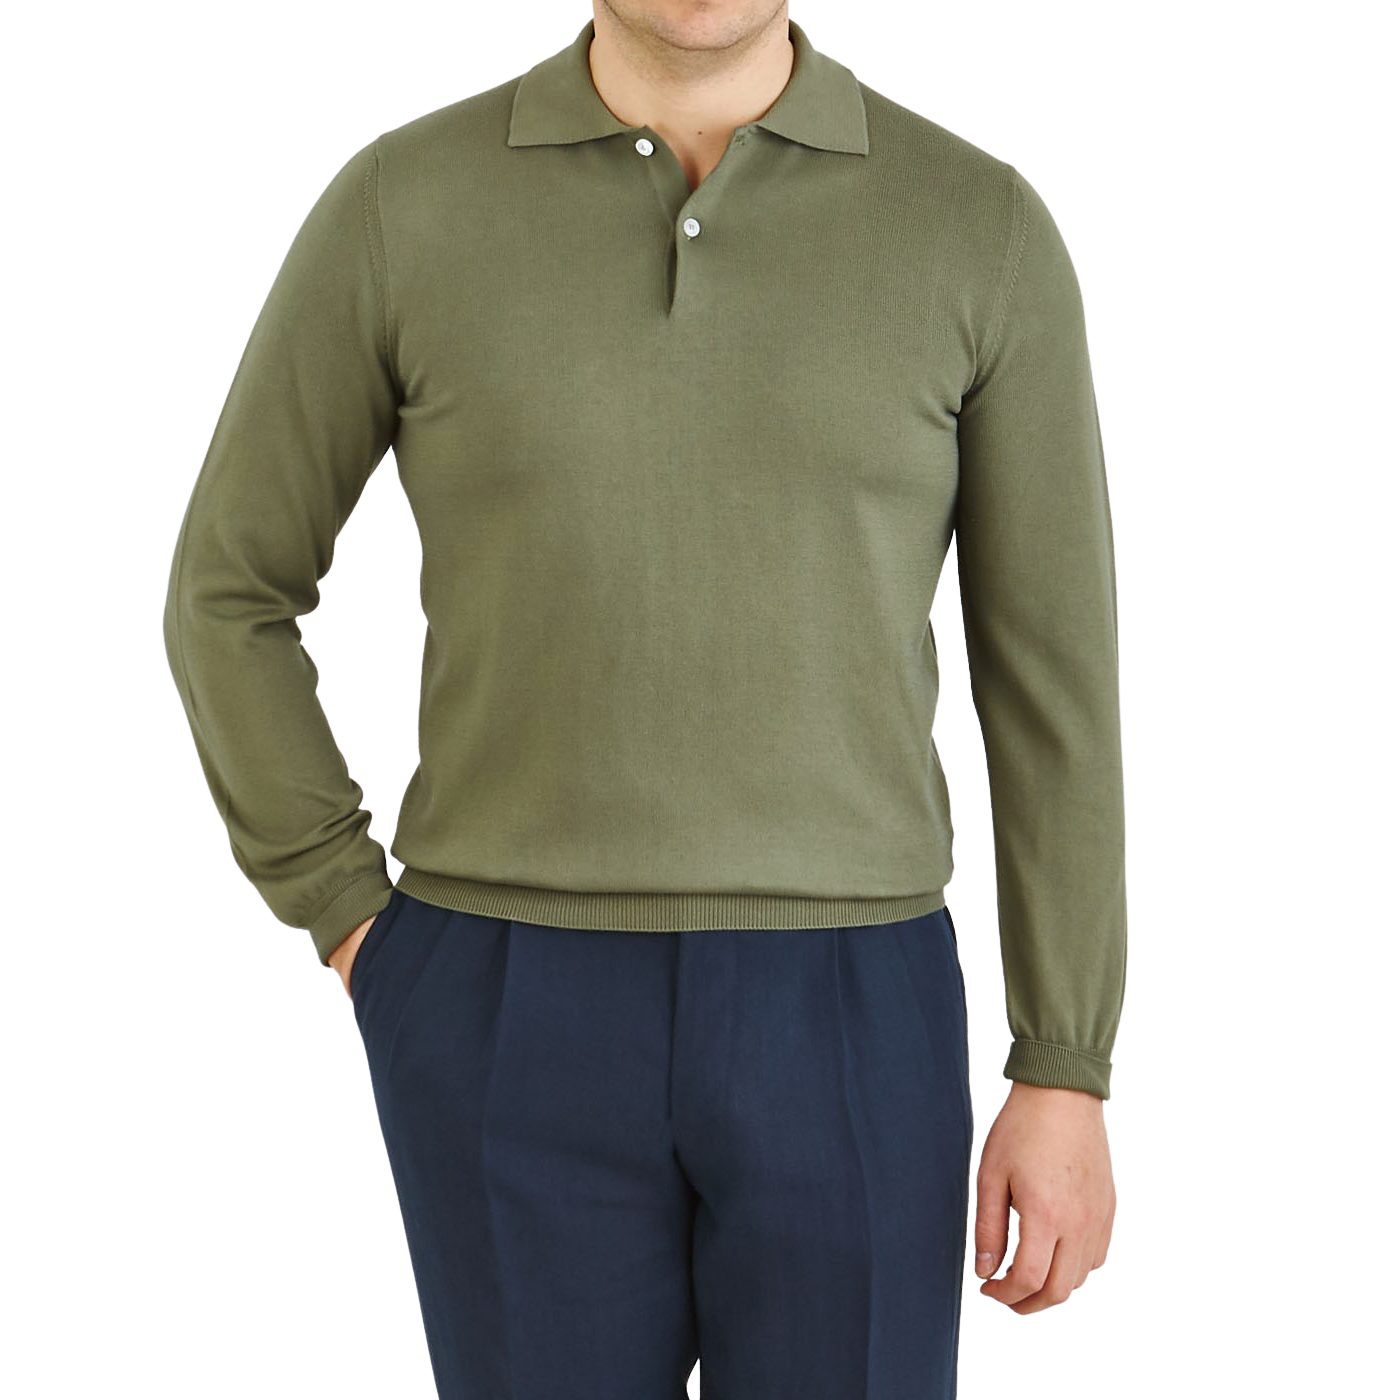 Mauro Ottaviani - Grass Green Supima Cotton LS Polo Shirt | Baltzar